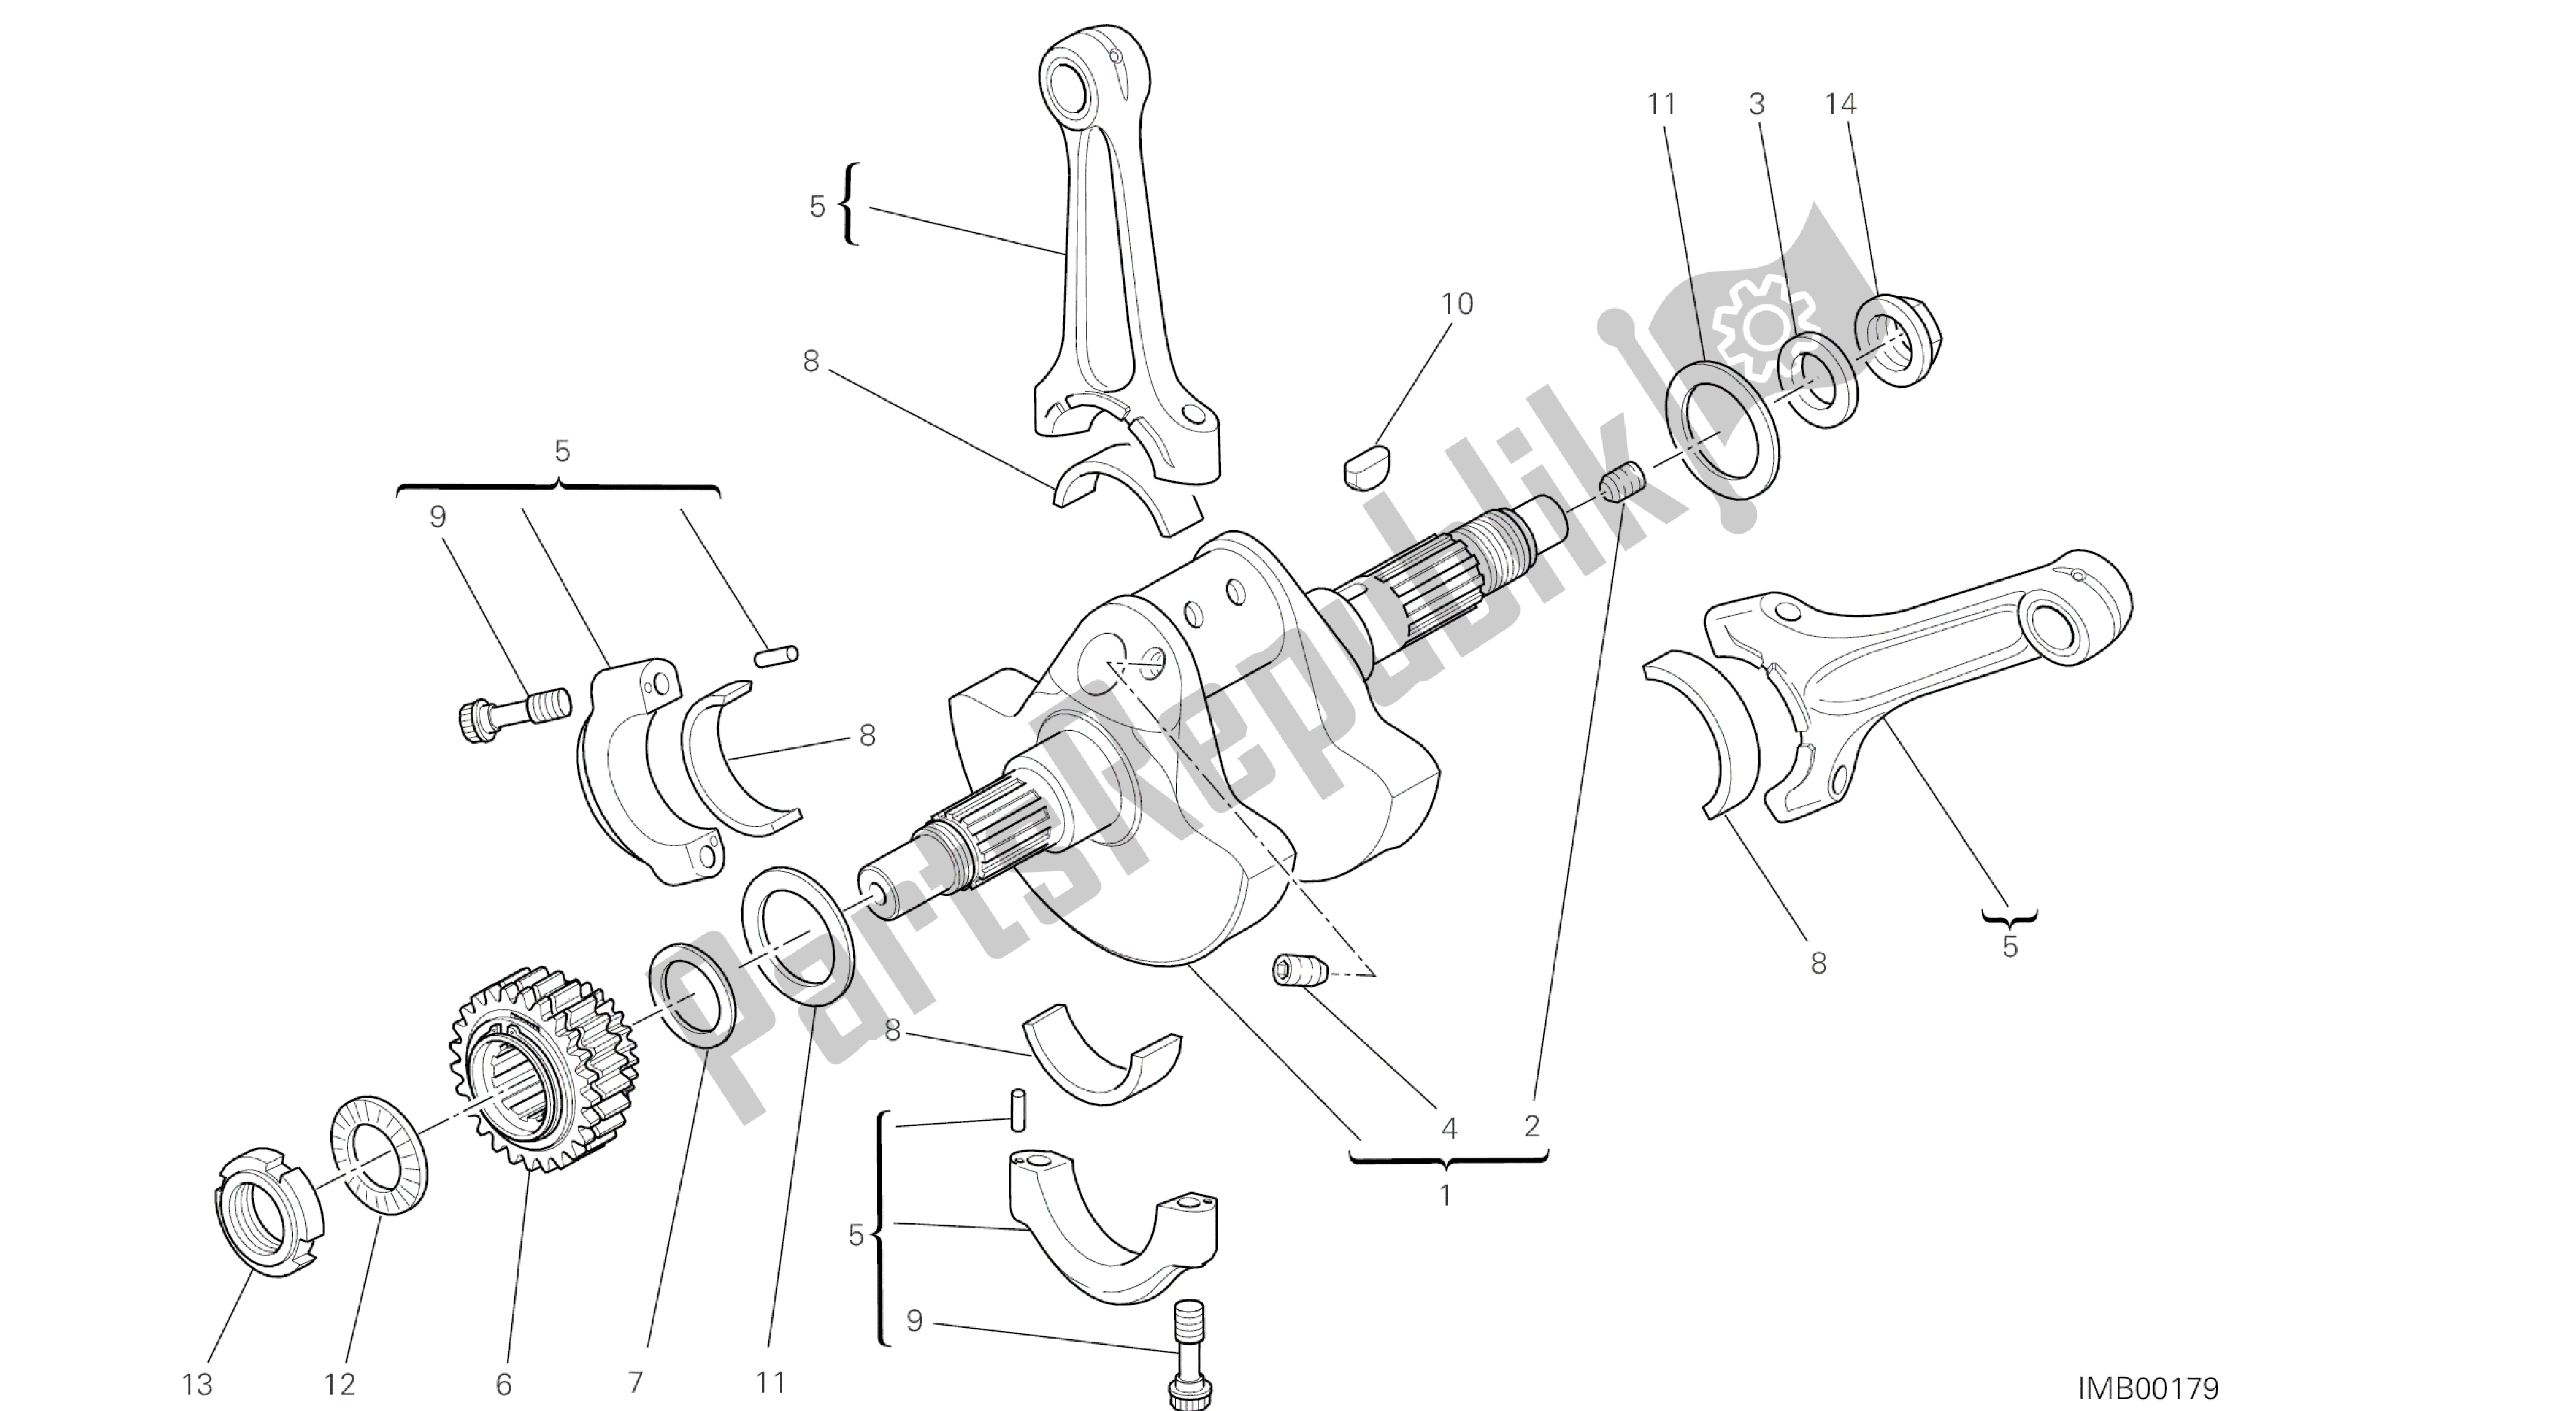 Tutte le parti per il Disegno 006 - Albero Motore [mod: Ms1200pp; Xst: Aus, Eur, Fra, Jap, Tha] Gruppo Motore del Ducati Multistrada S Pikes Peak 1200 2014